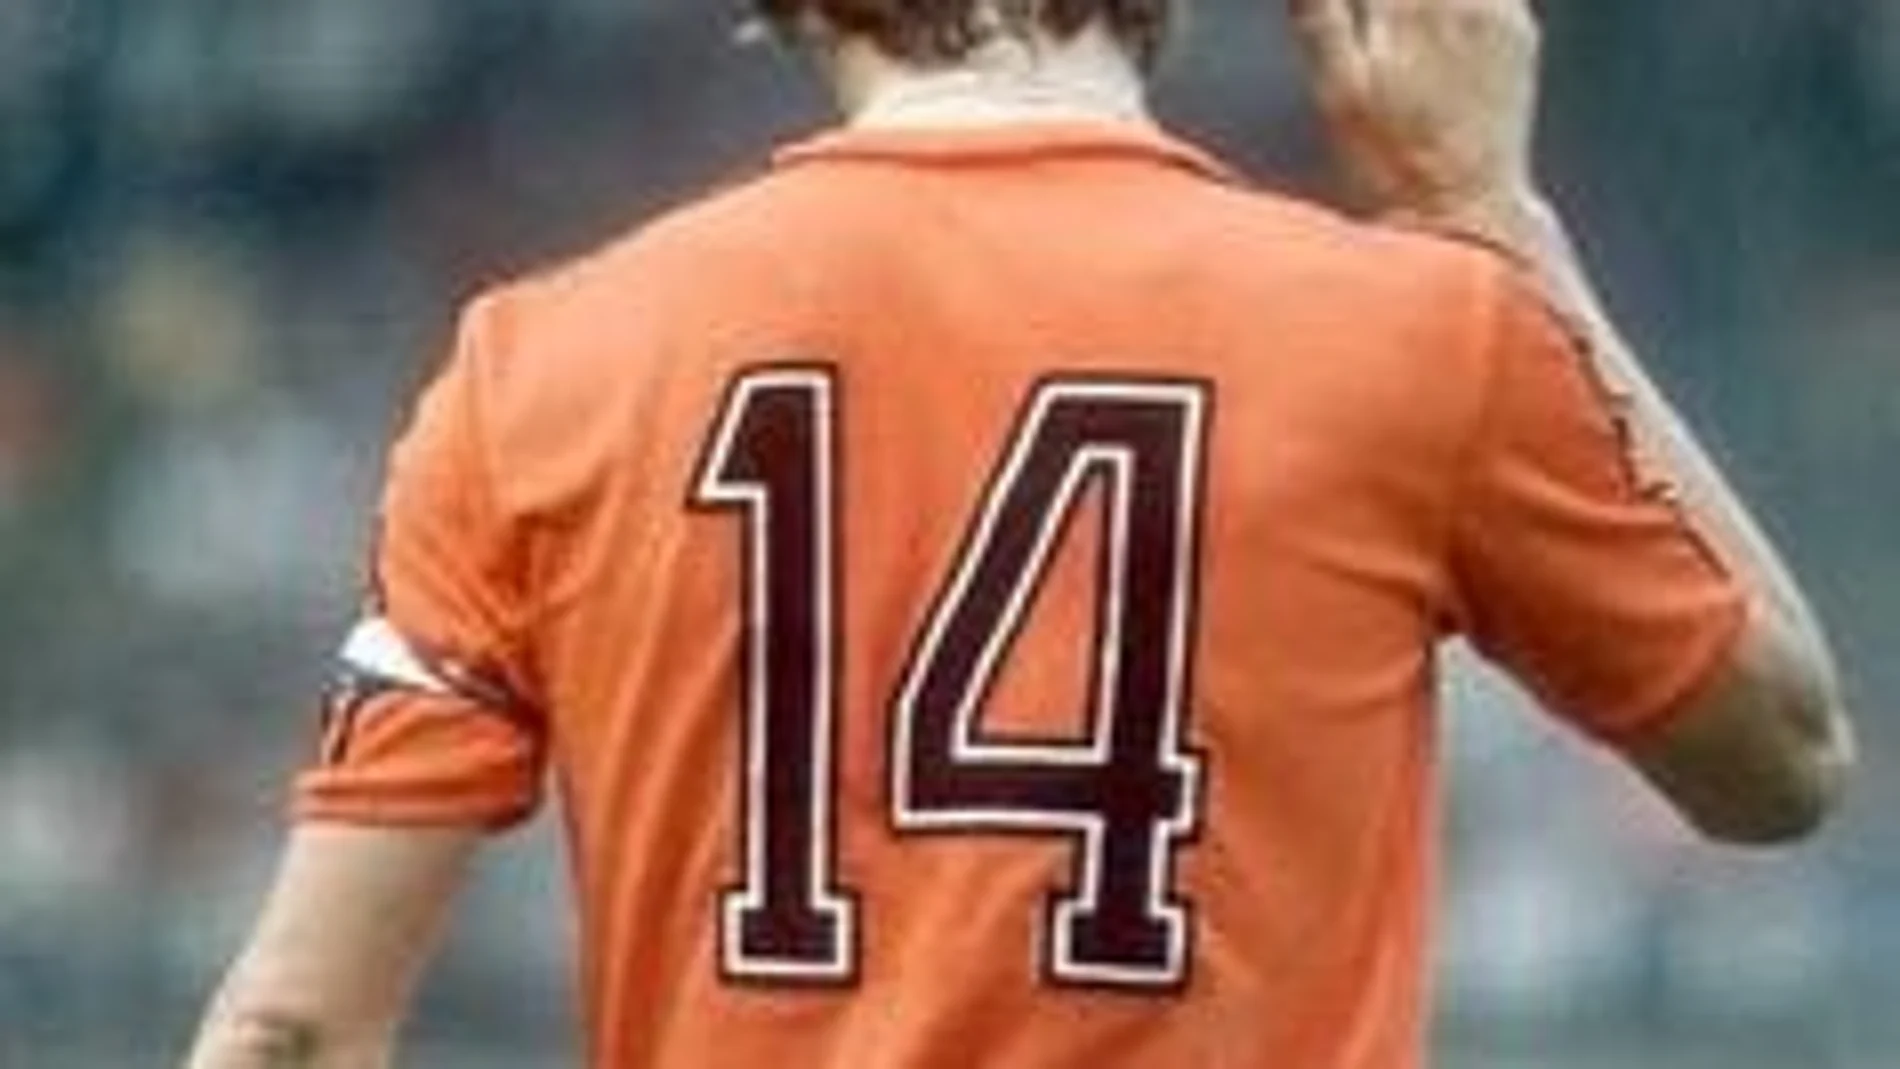 El mítico «14» en la espalda de Johan Cruyff